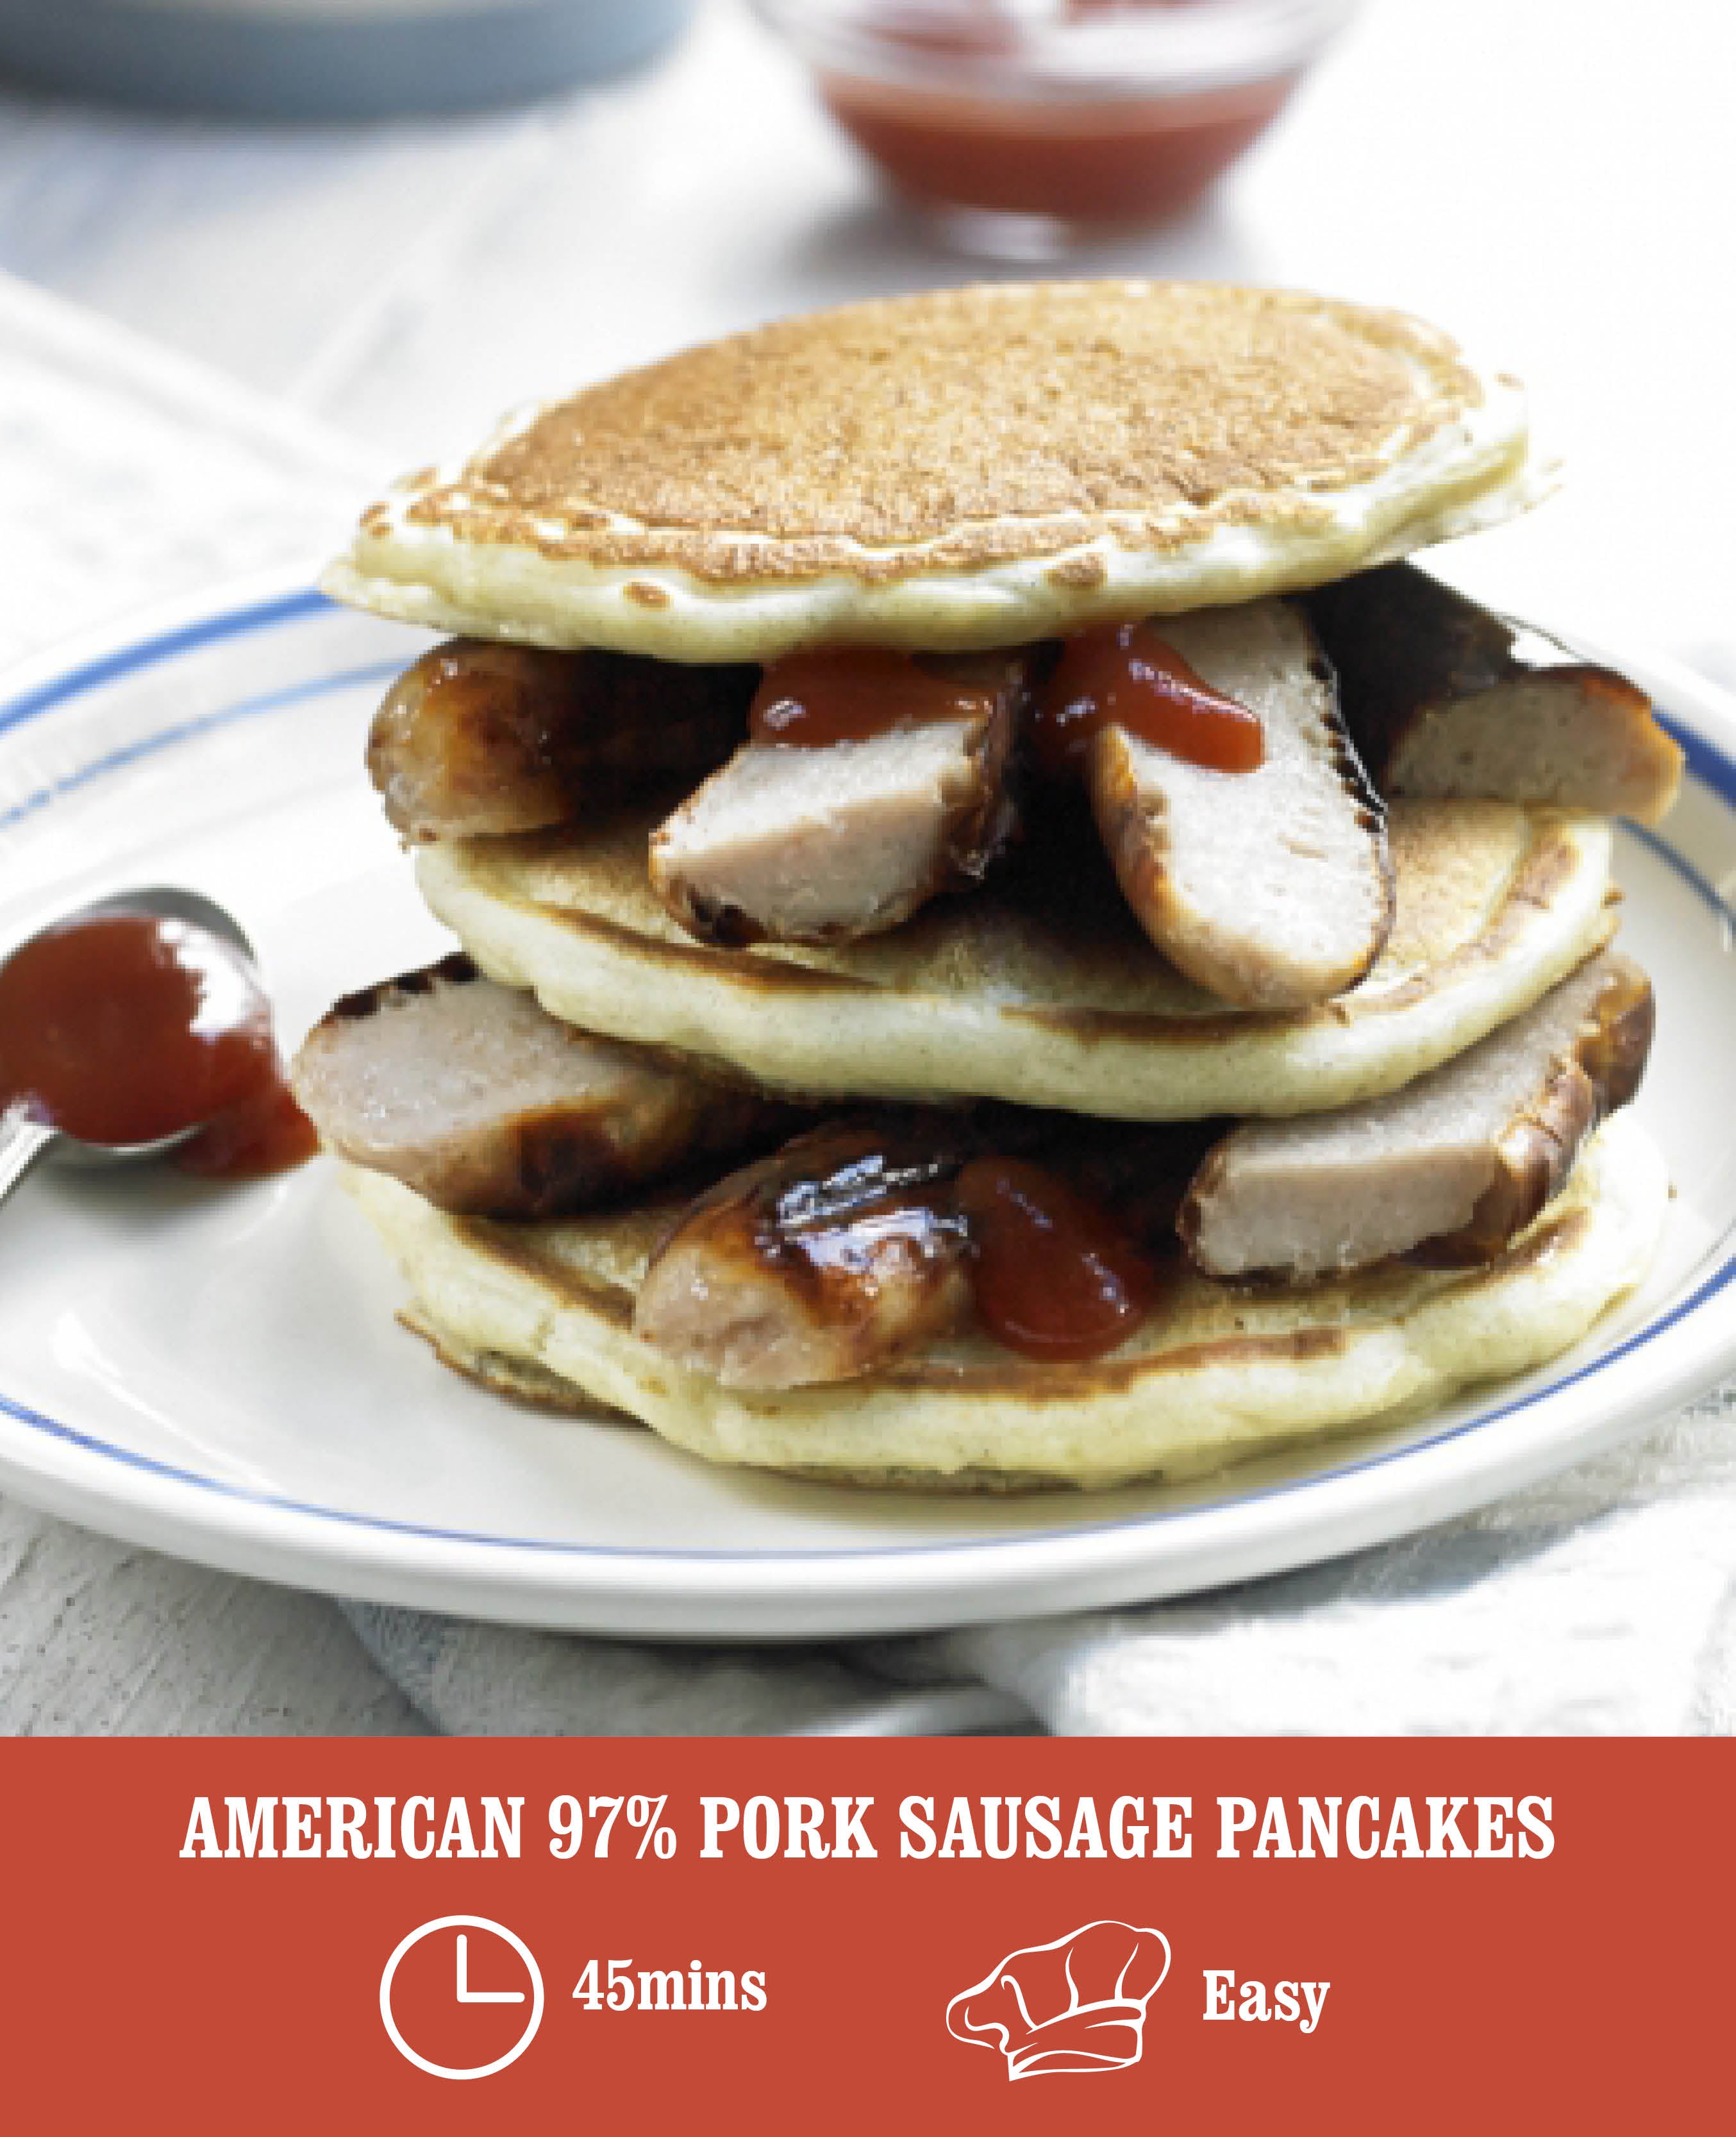 Sausage Pancakes Recipe: How to Make It